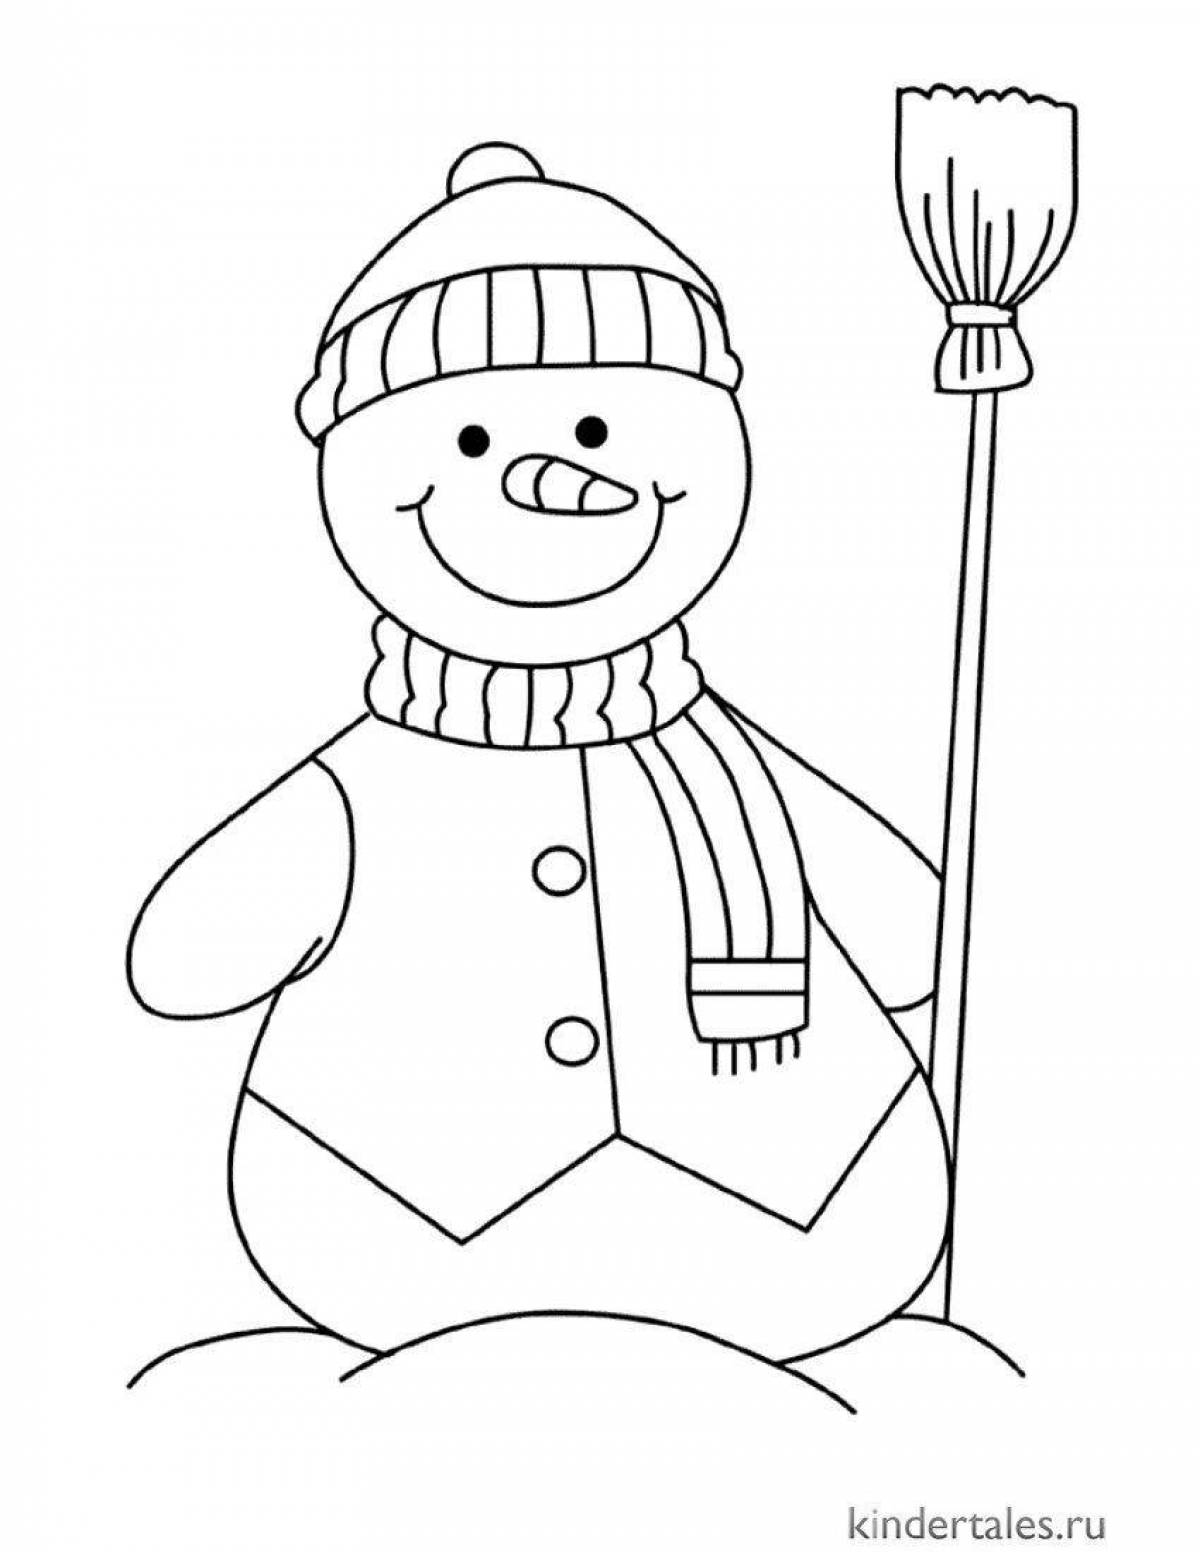 Увлекательная раскраска снеговик для детей 2 3